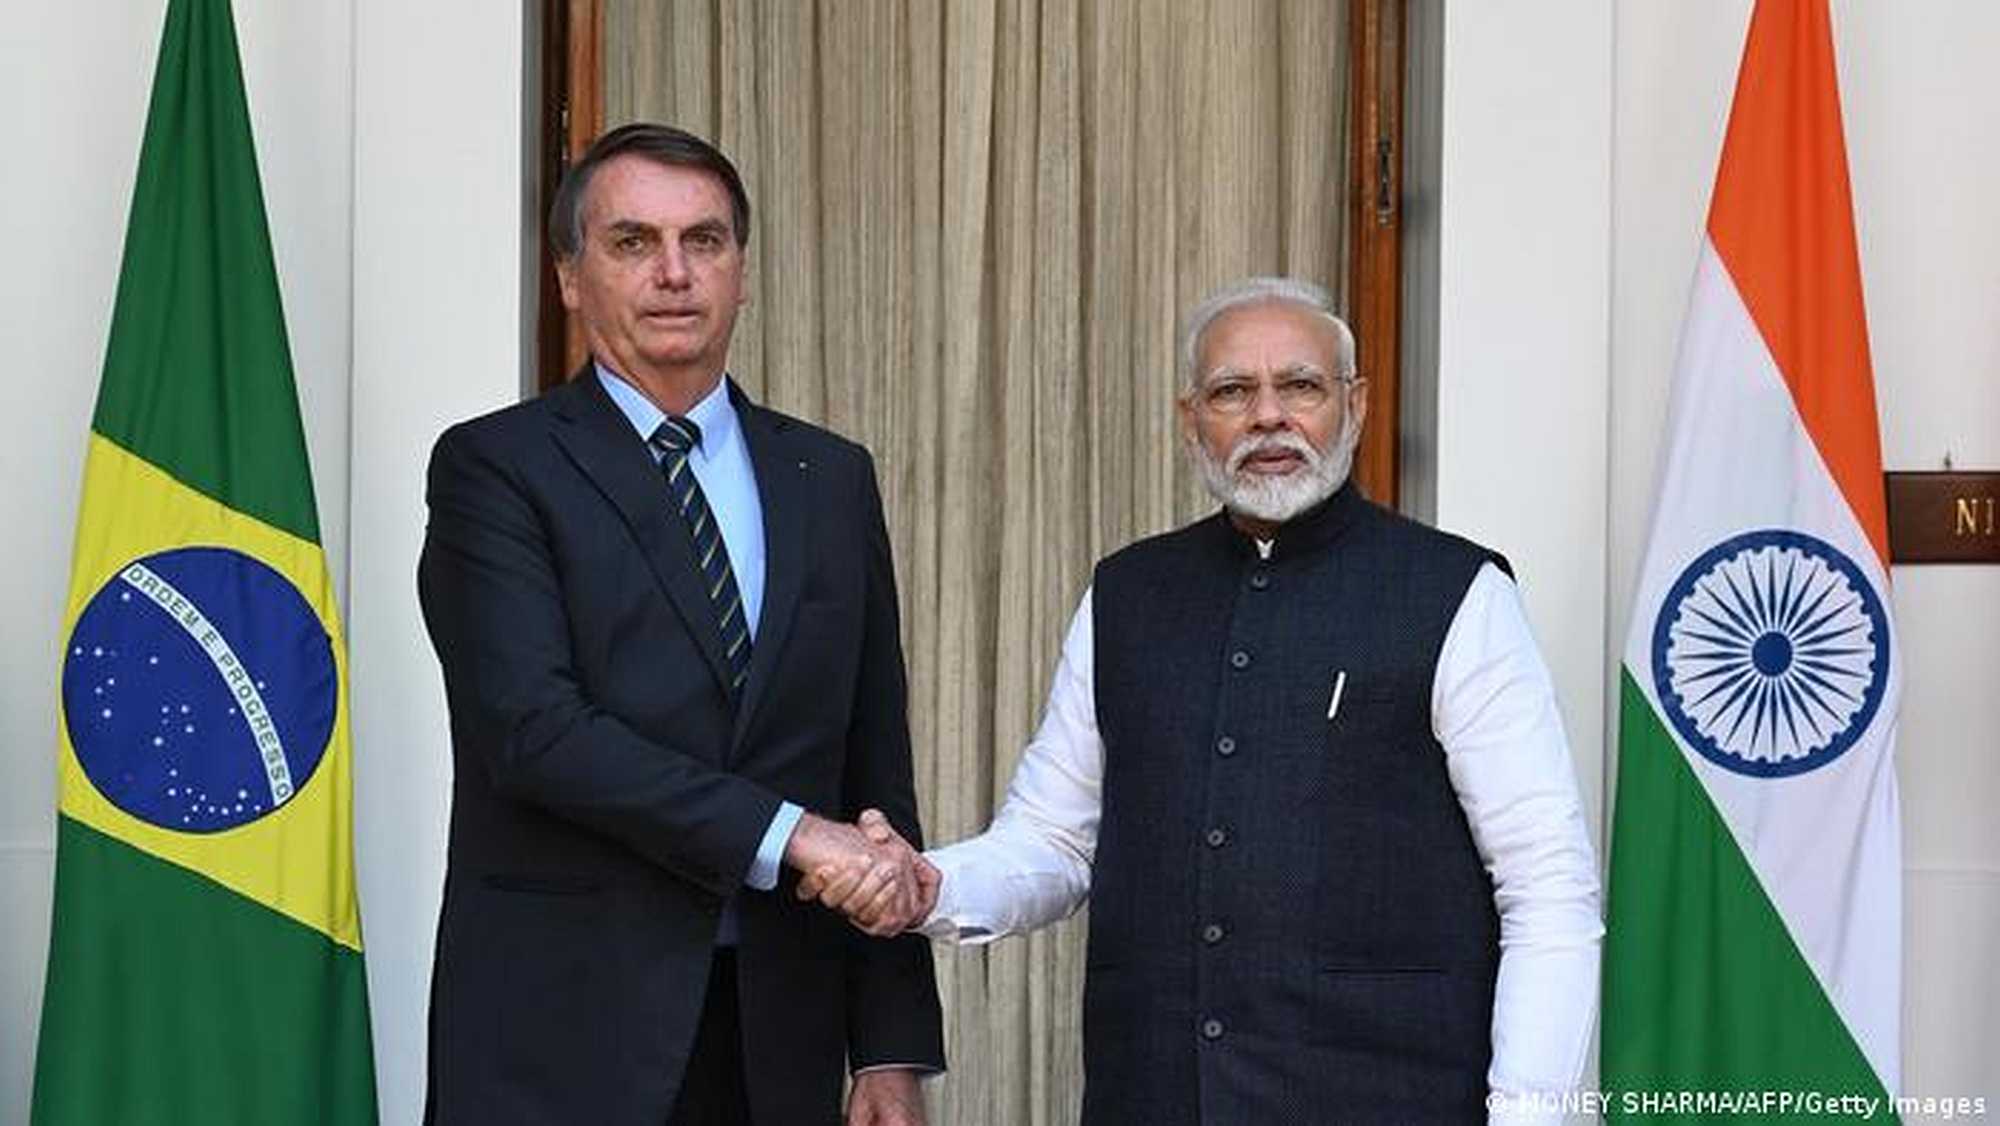 Jair Bolsonaro and Narendra Modi shake hands at a 2020 meeting